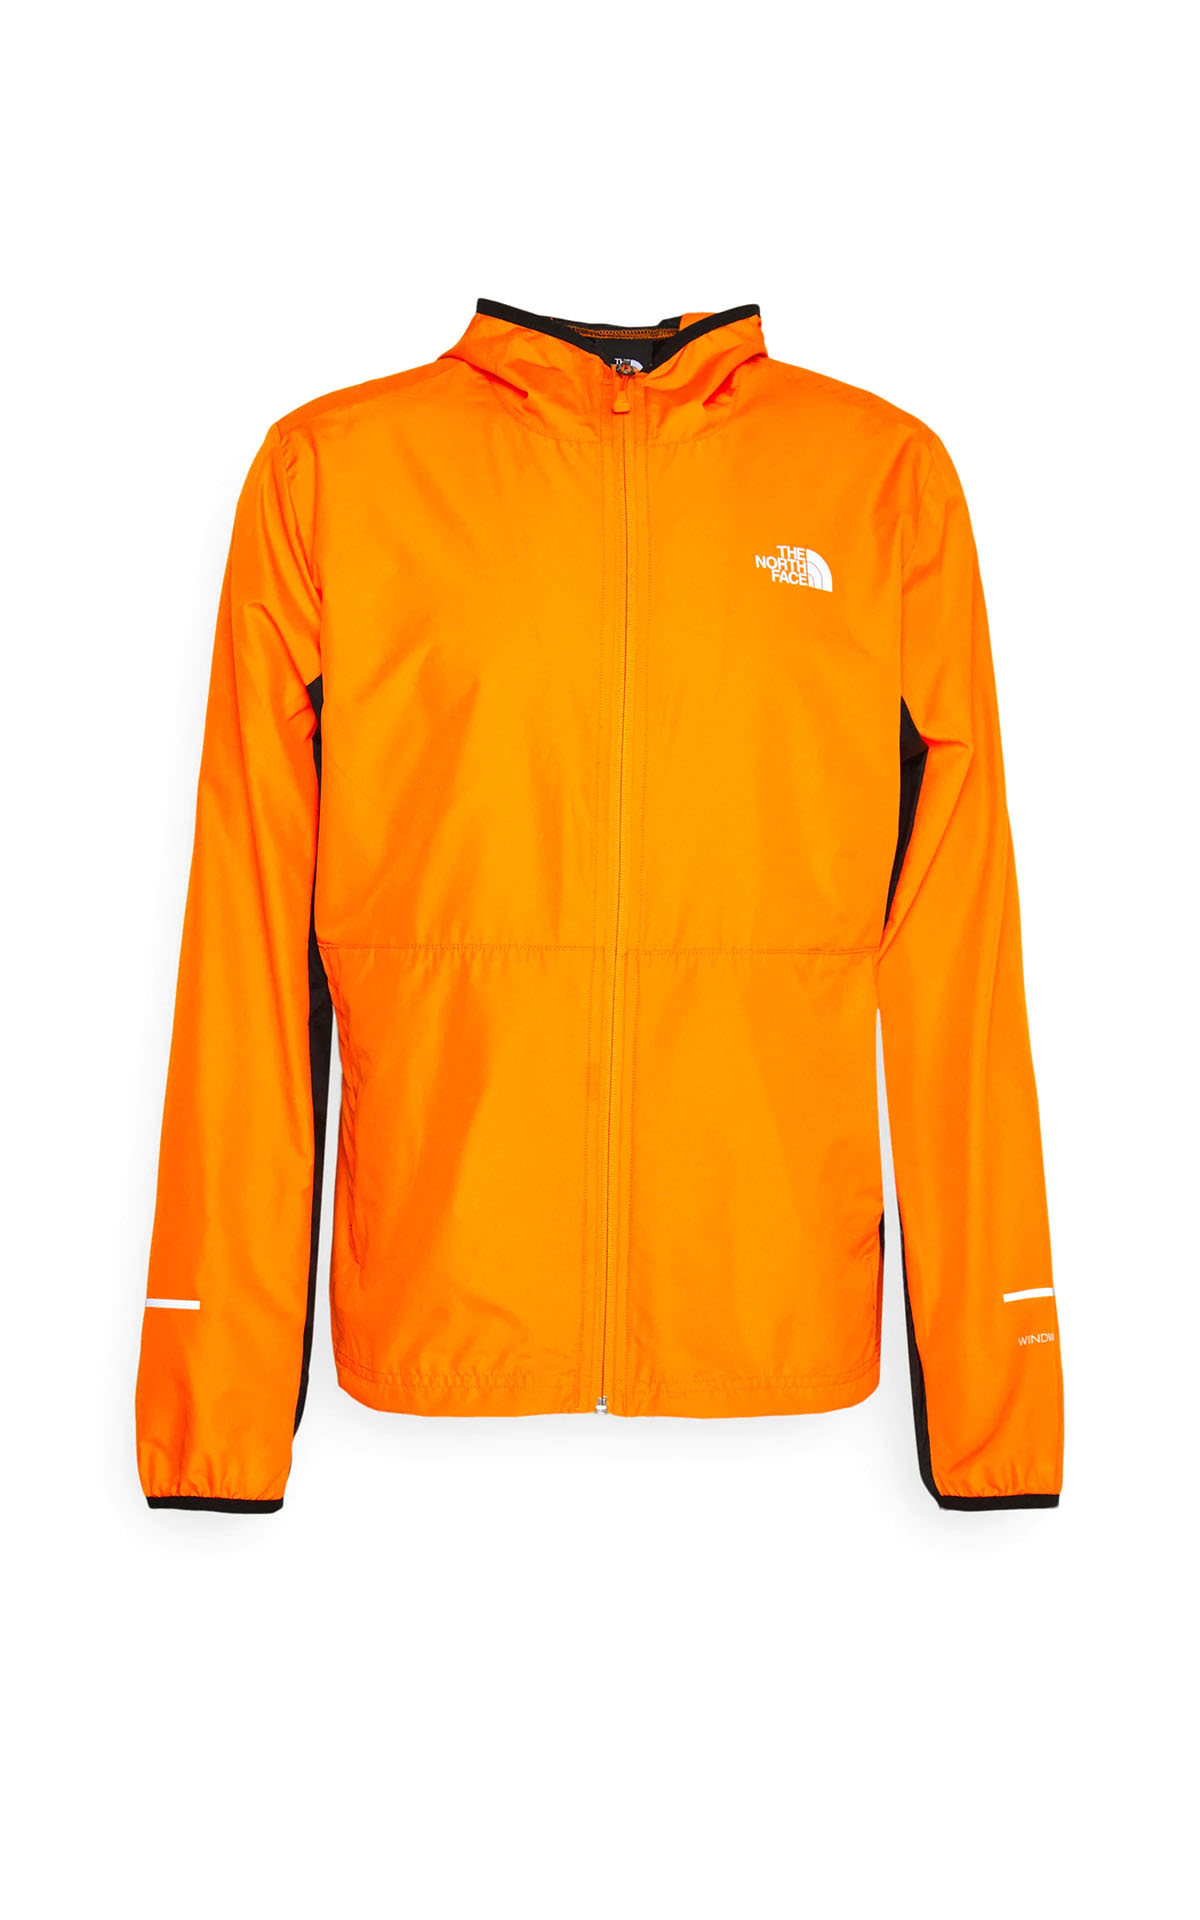 Orange jacket The North Face